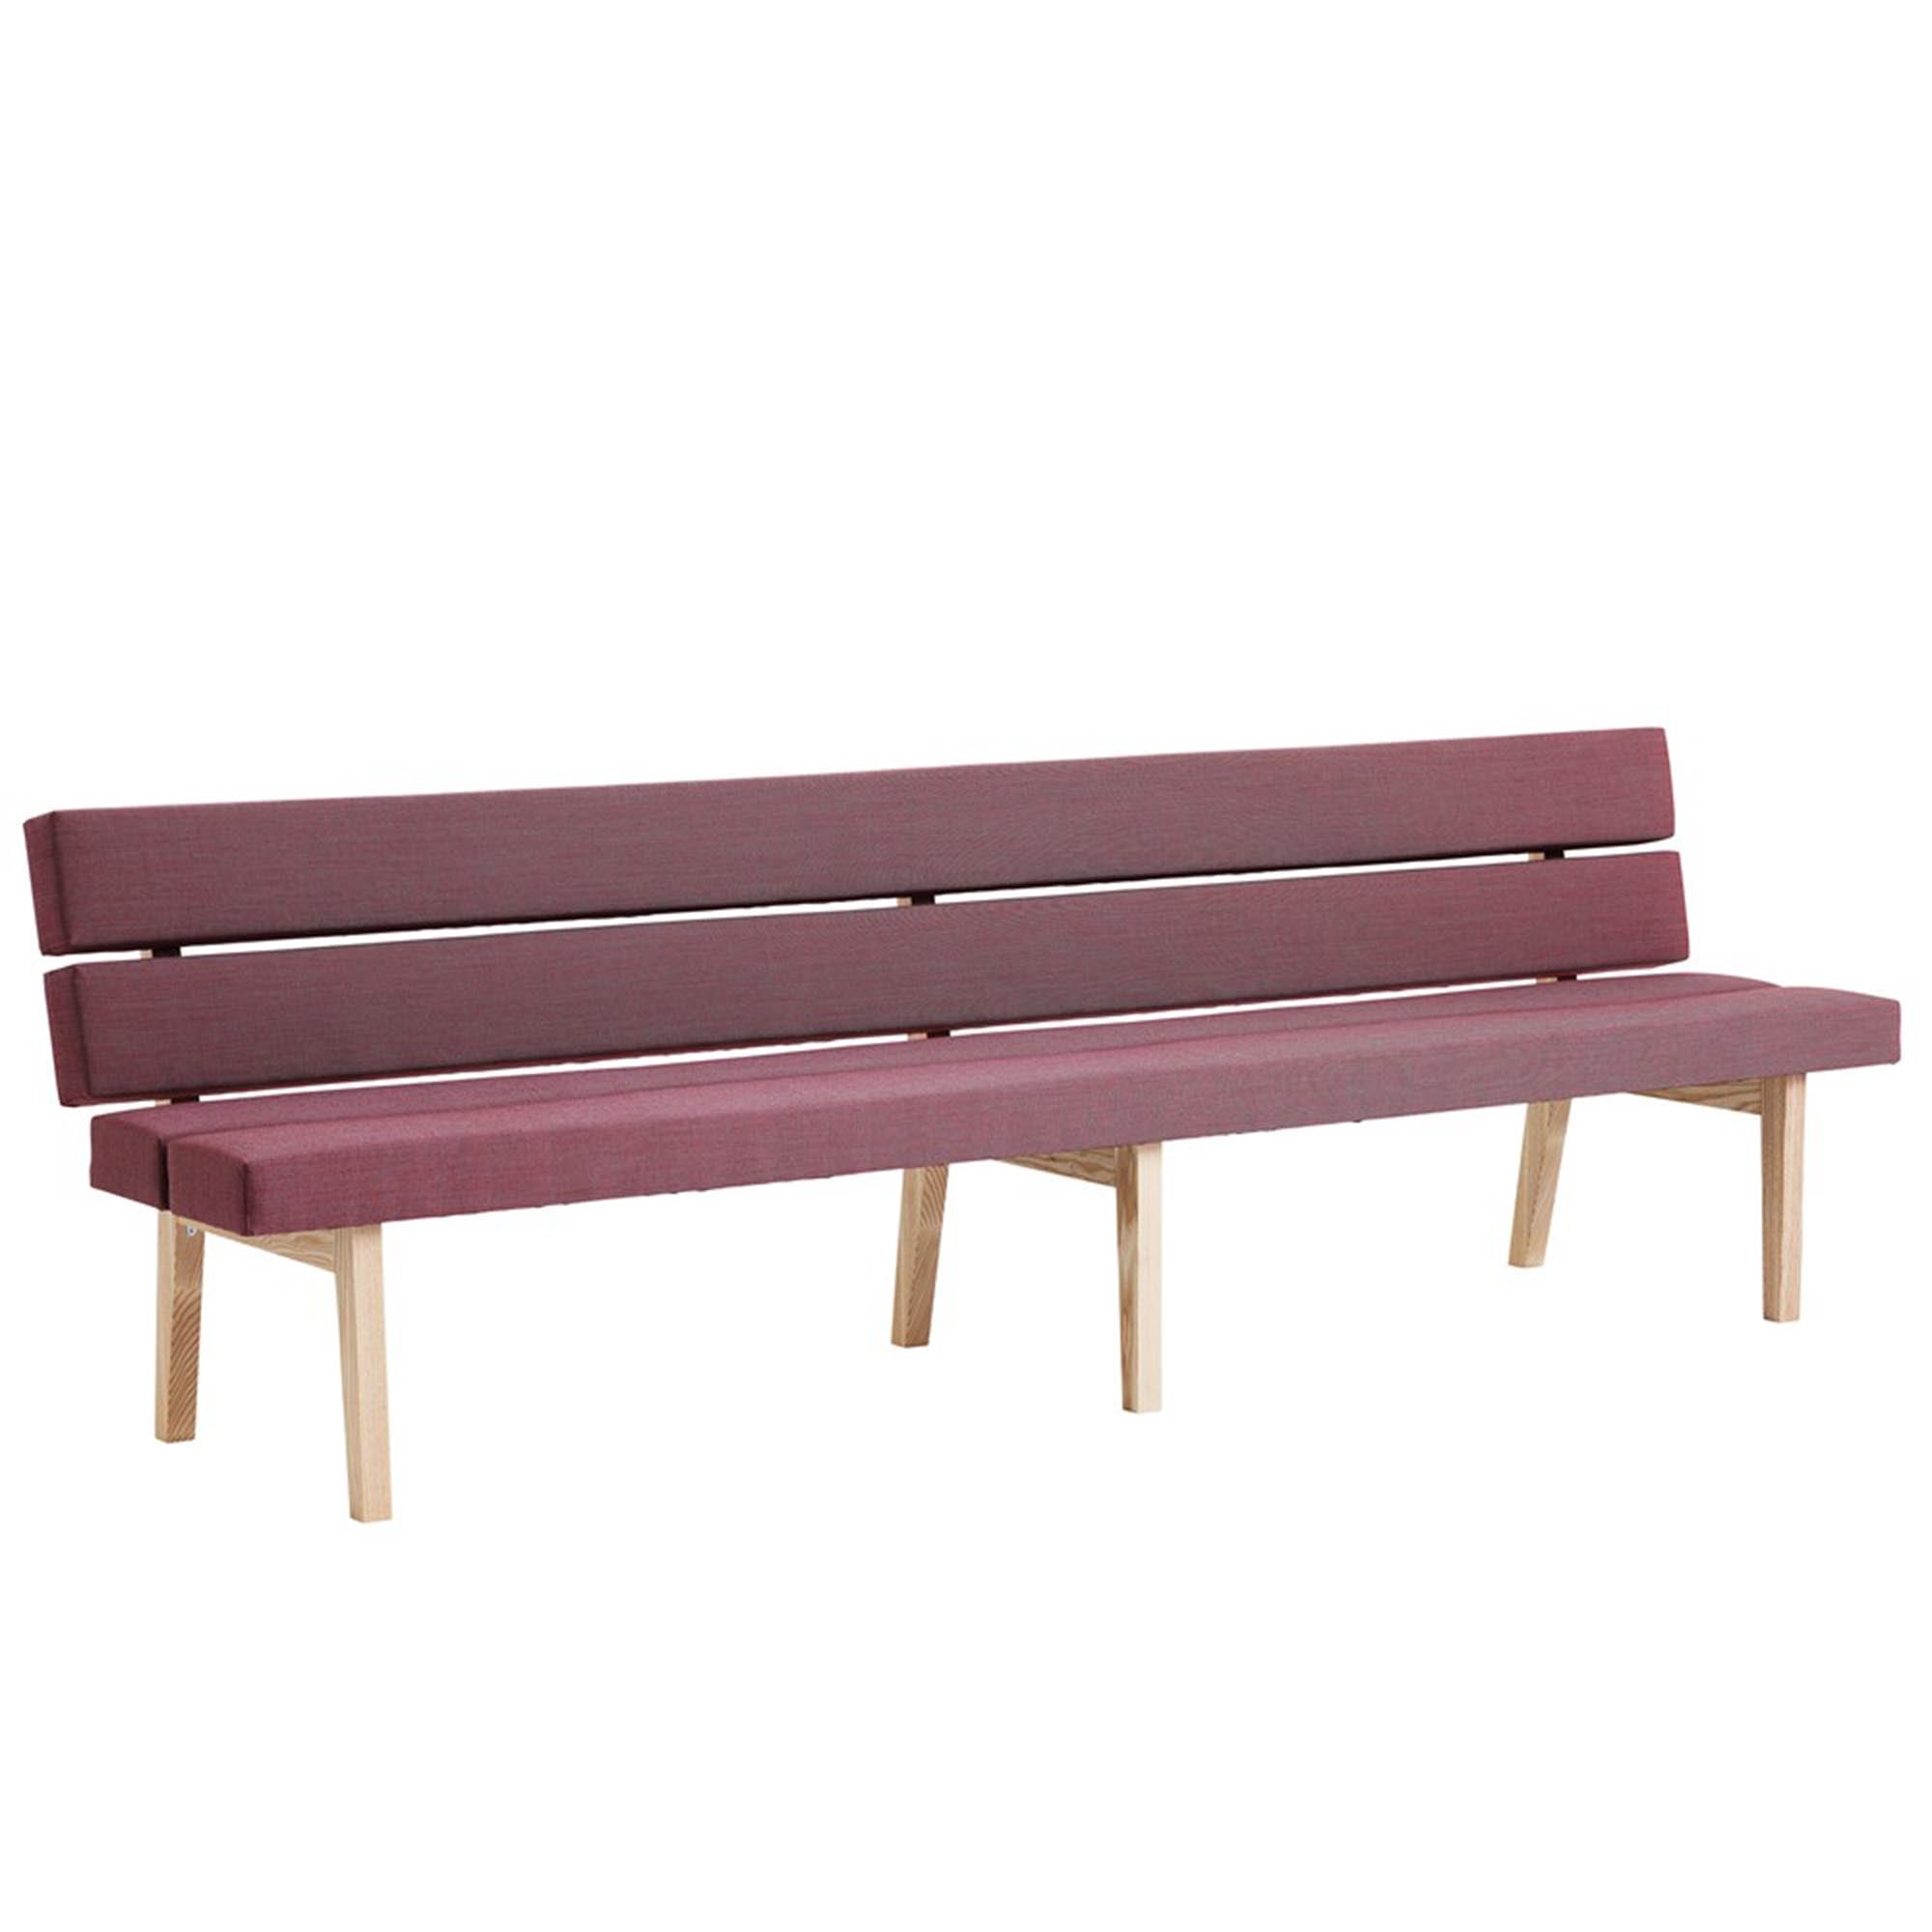 KAMON DINNER Bench purple upholstery, natural frame 260 cm